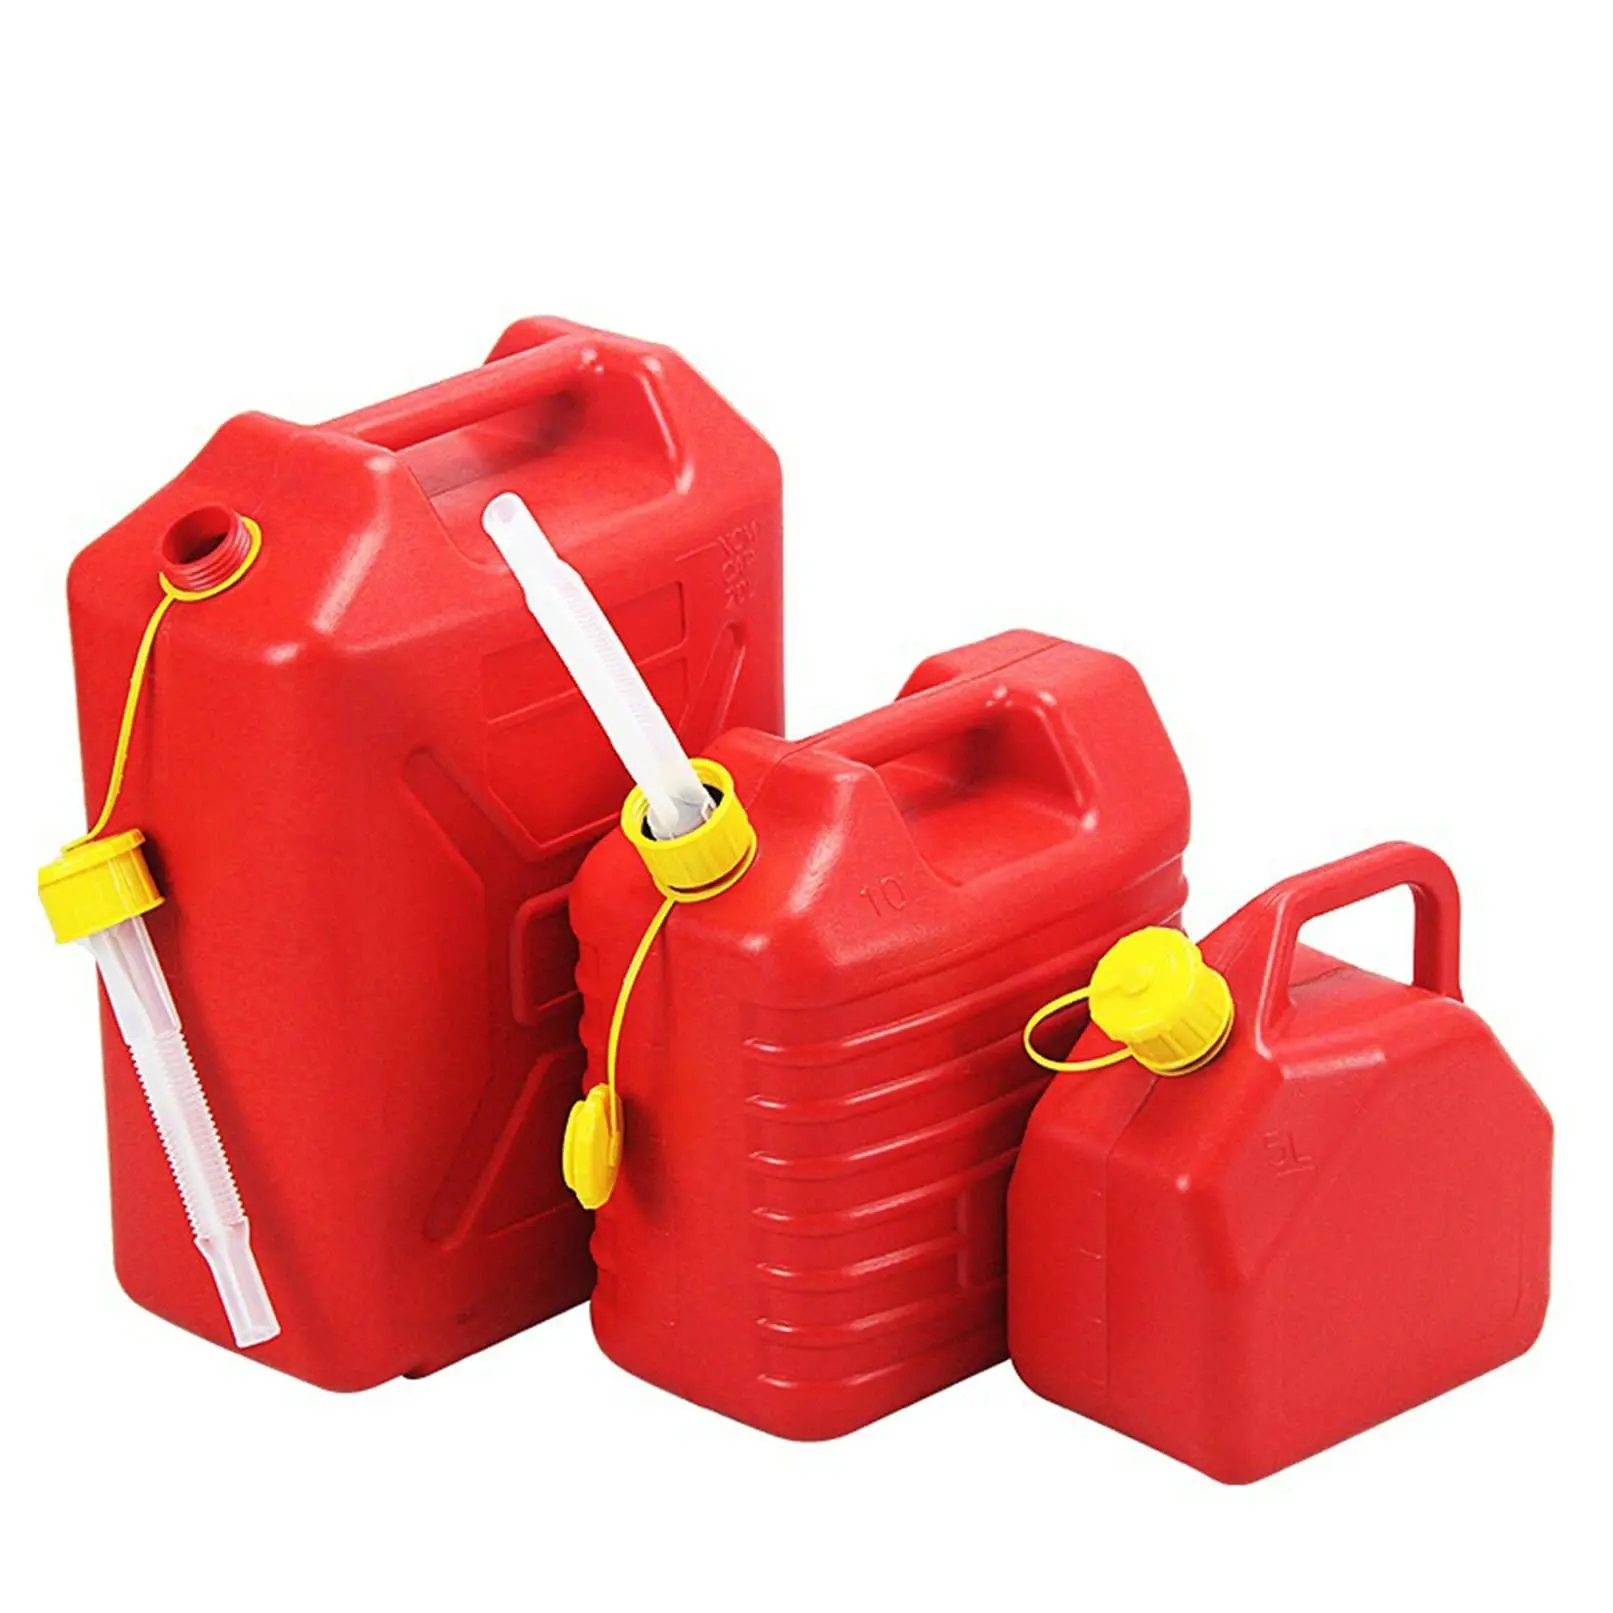 almacenar combustible en tanque de lata o plastico - Cómo almacenar gasolina de forma segura